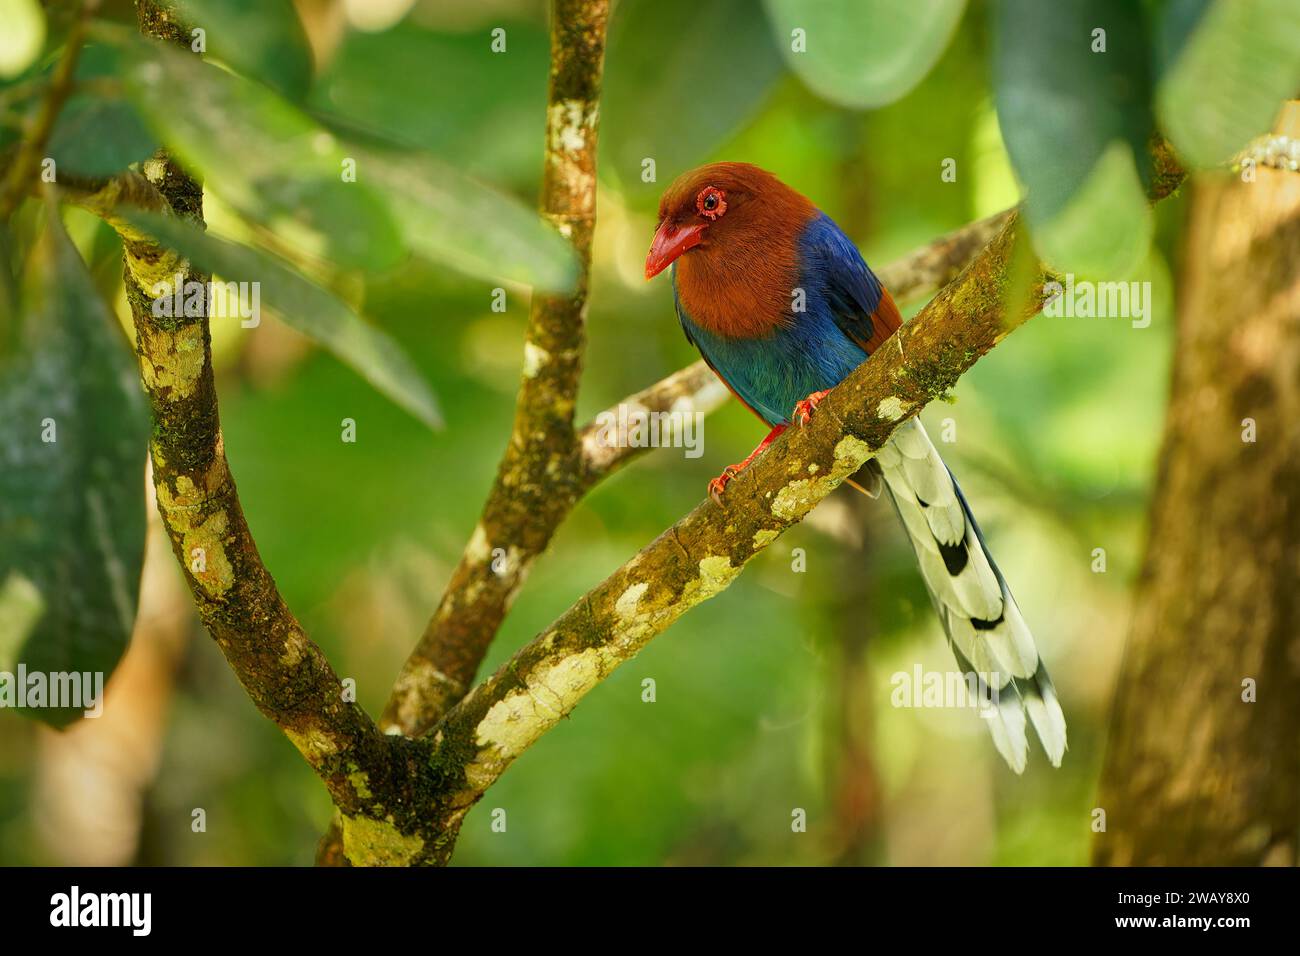 Sri Lanka ou Ceylan Blue-Magpie - Urocissa ornata oiseau aux couleurs vives Corvidés au Sri Lanka, chassant dans la canopée dense, bleu, rouge magpi coloré Banque D'Images